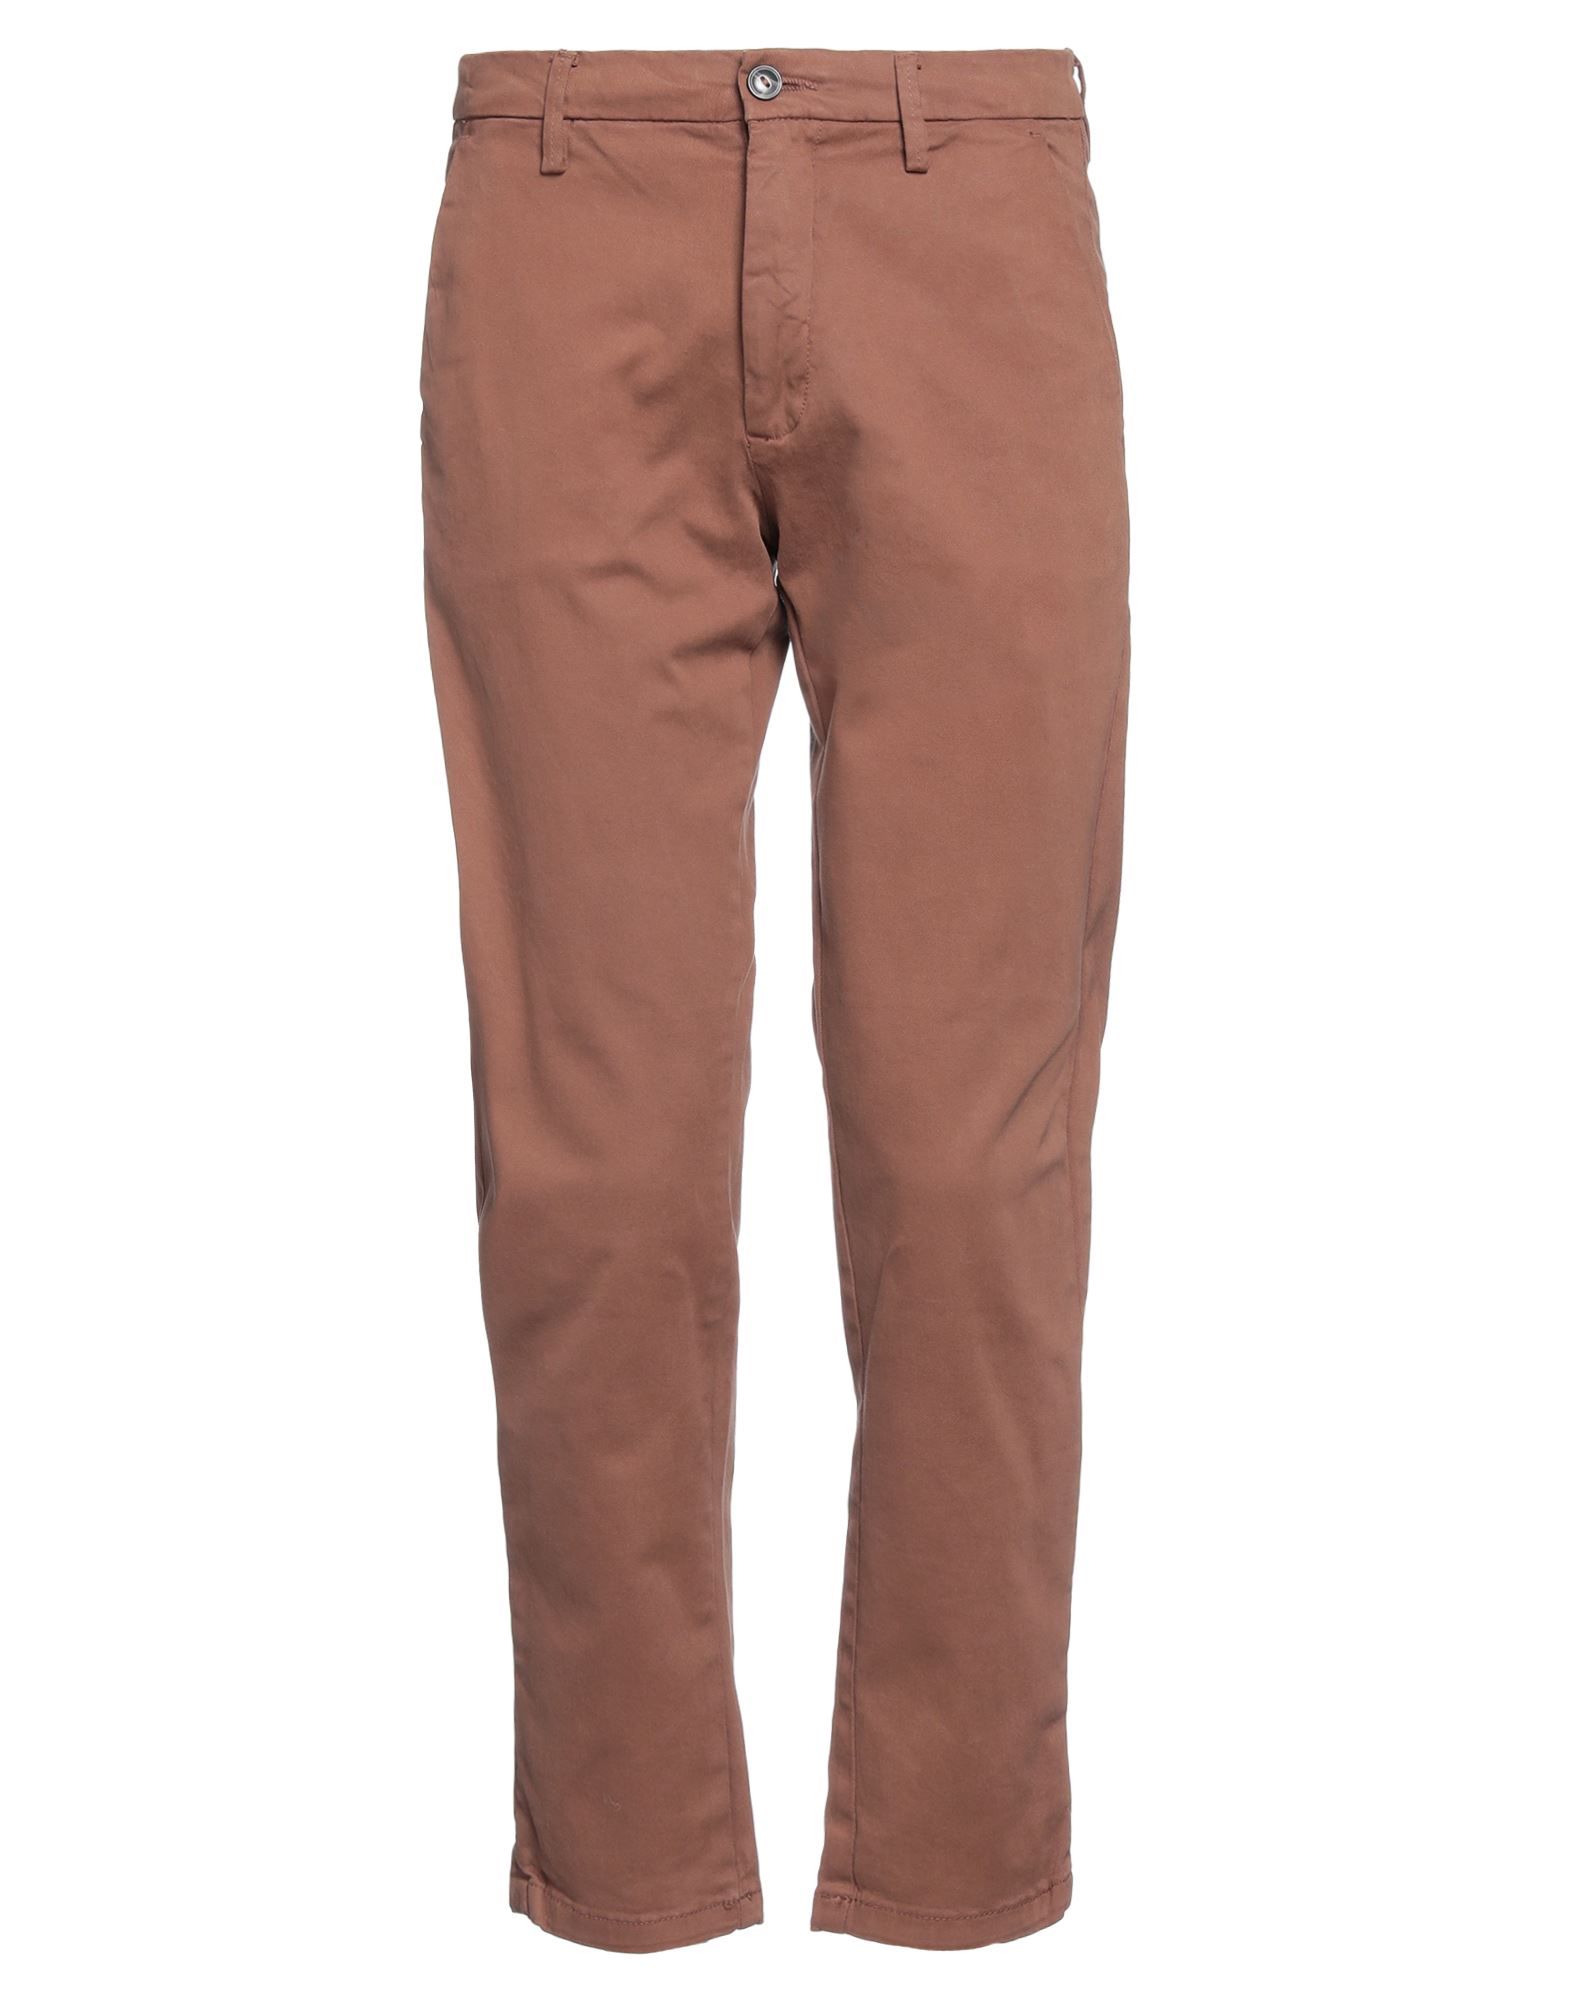 Paul Martin's Pants In Brown